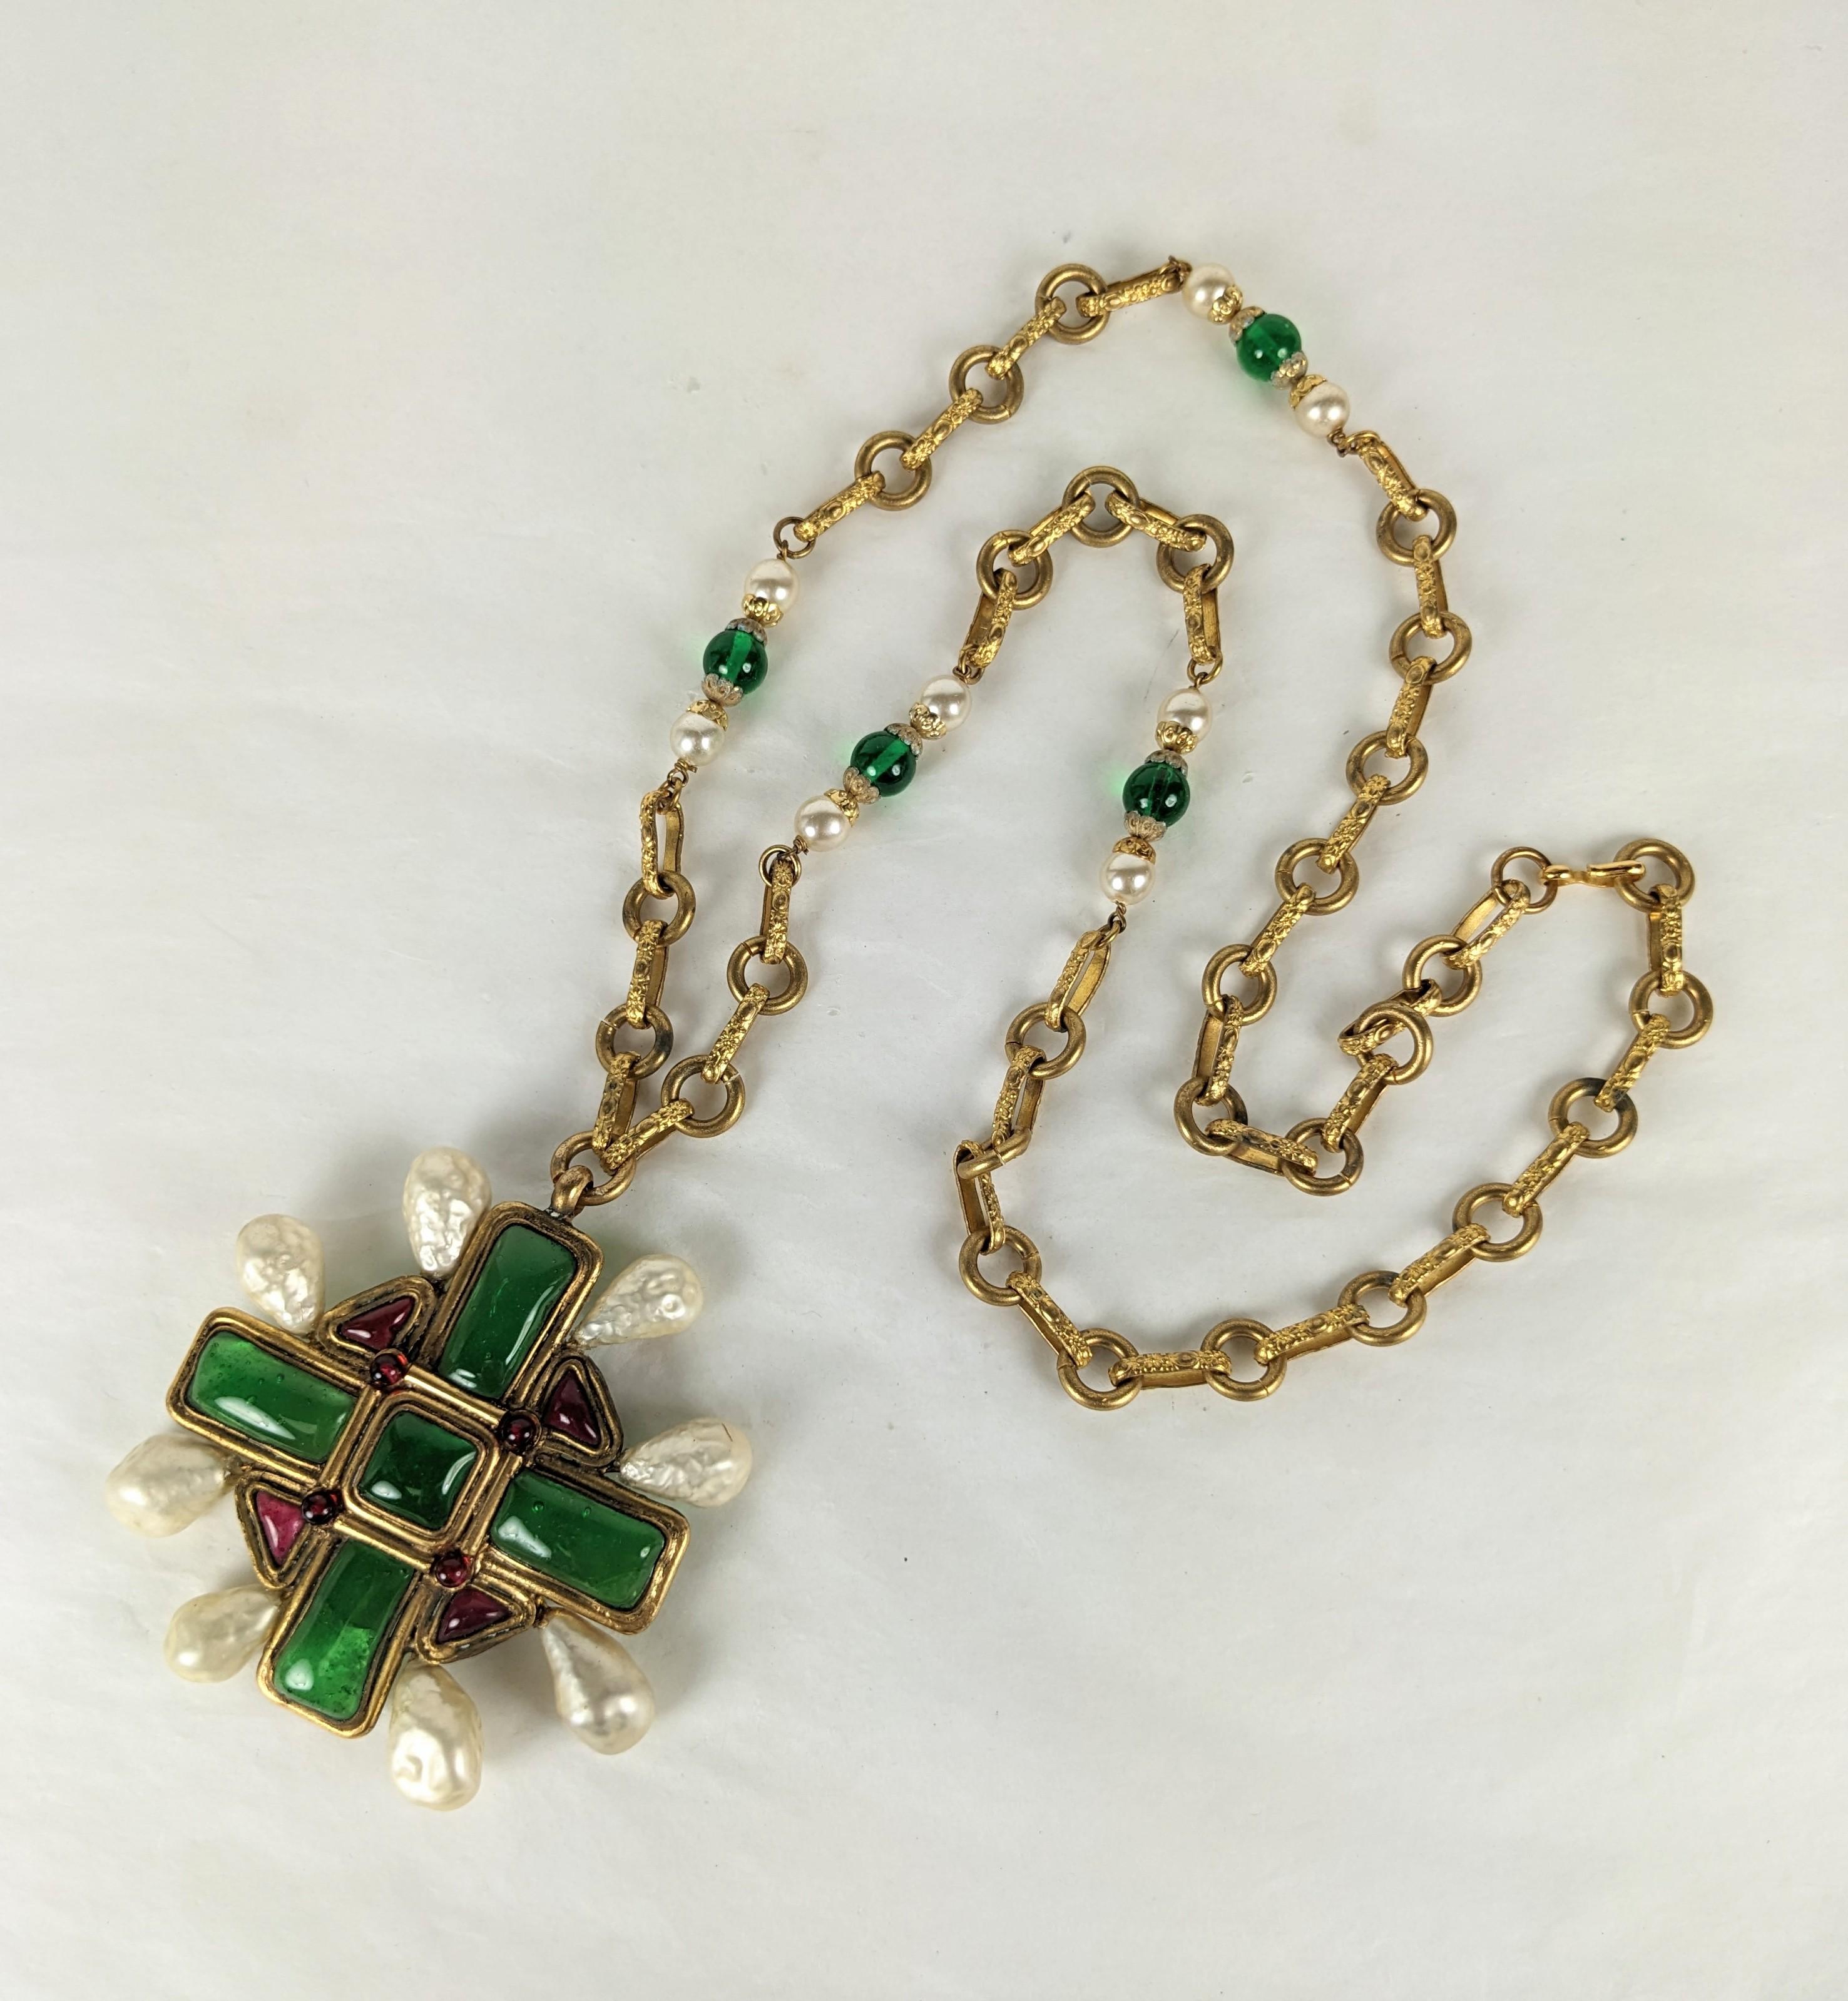 Außergewöhnliche seltene und wichtige Maison Gripoix für Coco Chanel aufwendige handgefertigte byzantinische Kruzifix-Anhänger-Halskette. Das zentrale Kruzifix aus rubin- und smaragdfarbenem Gripoix-Glasemail und kleinen Rubin-Cabocheons, mit acht